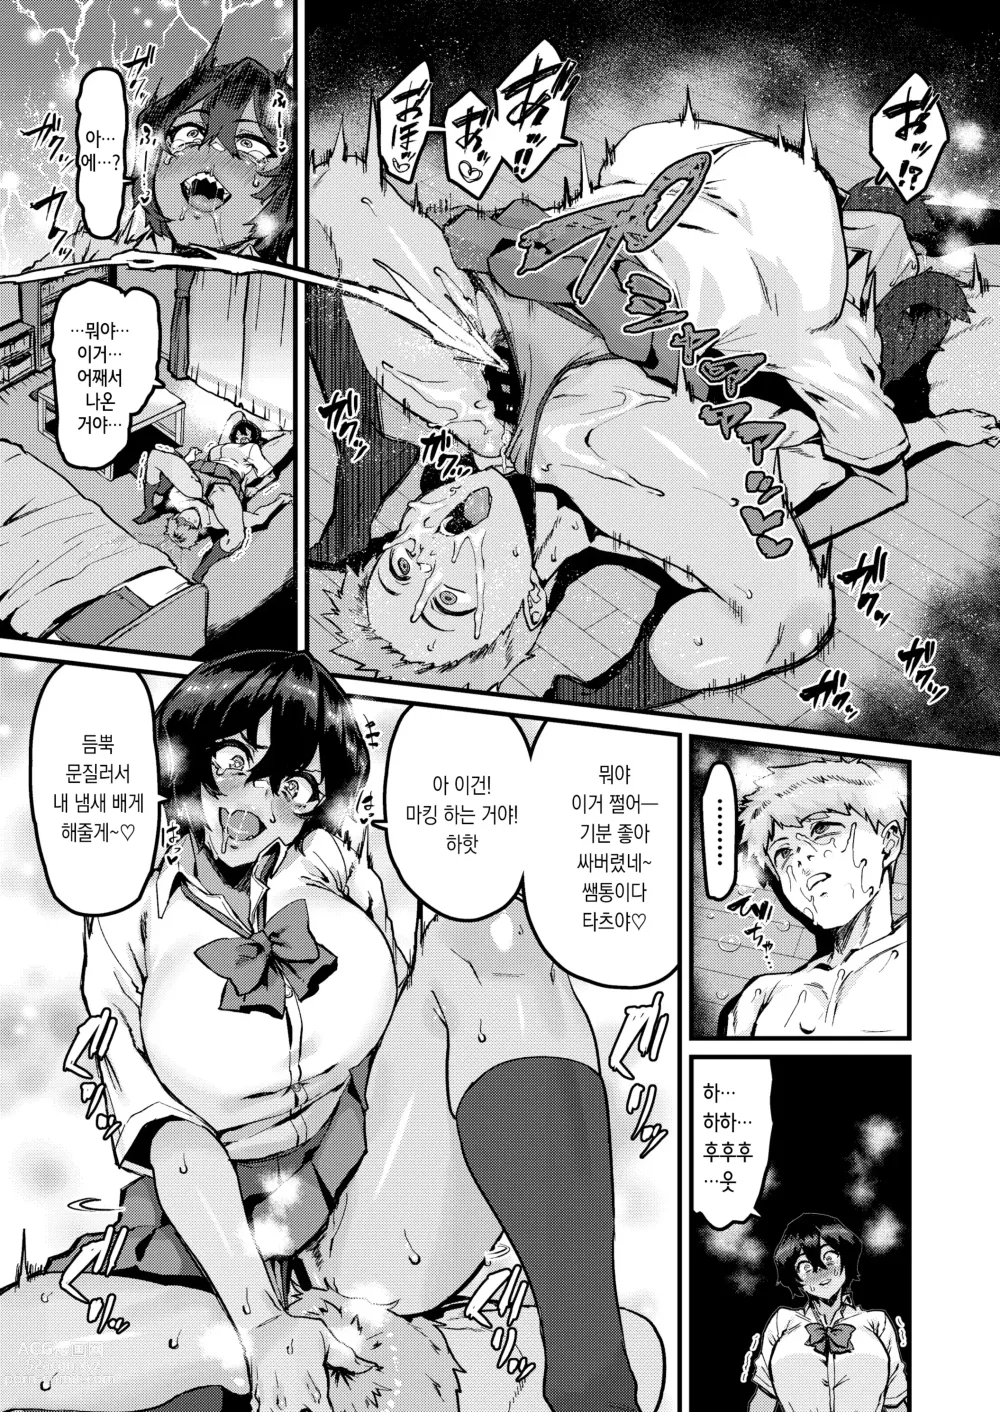 Page 13 of doujinshi 쪽이 계속 전부터 좋아했는데